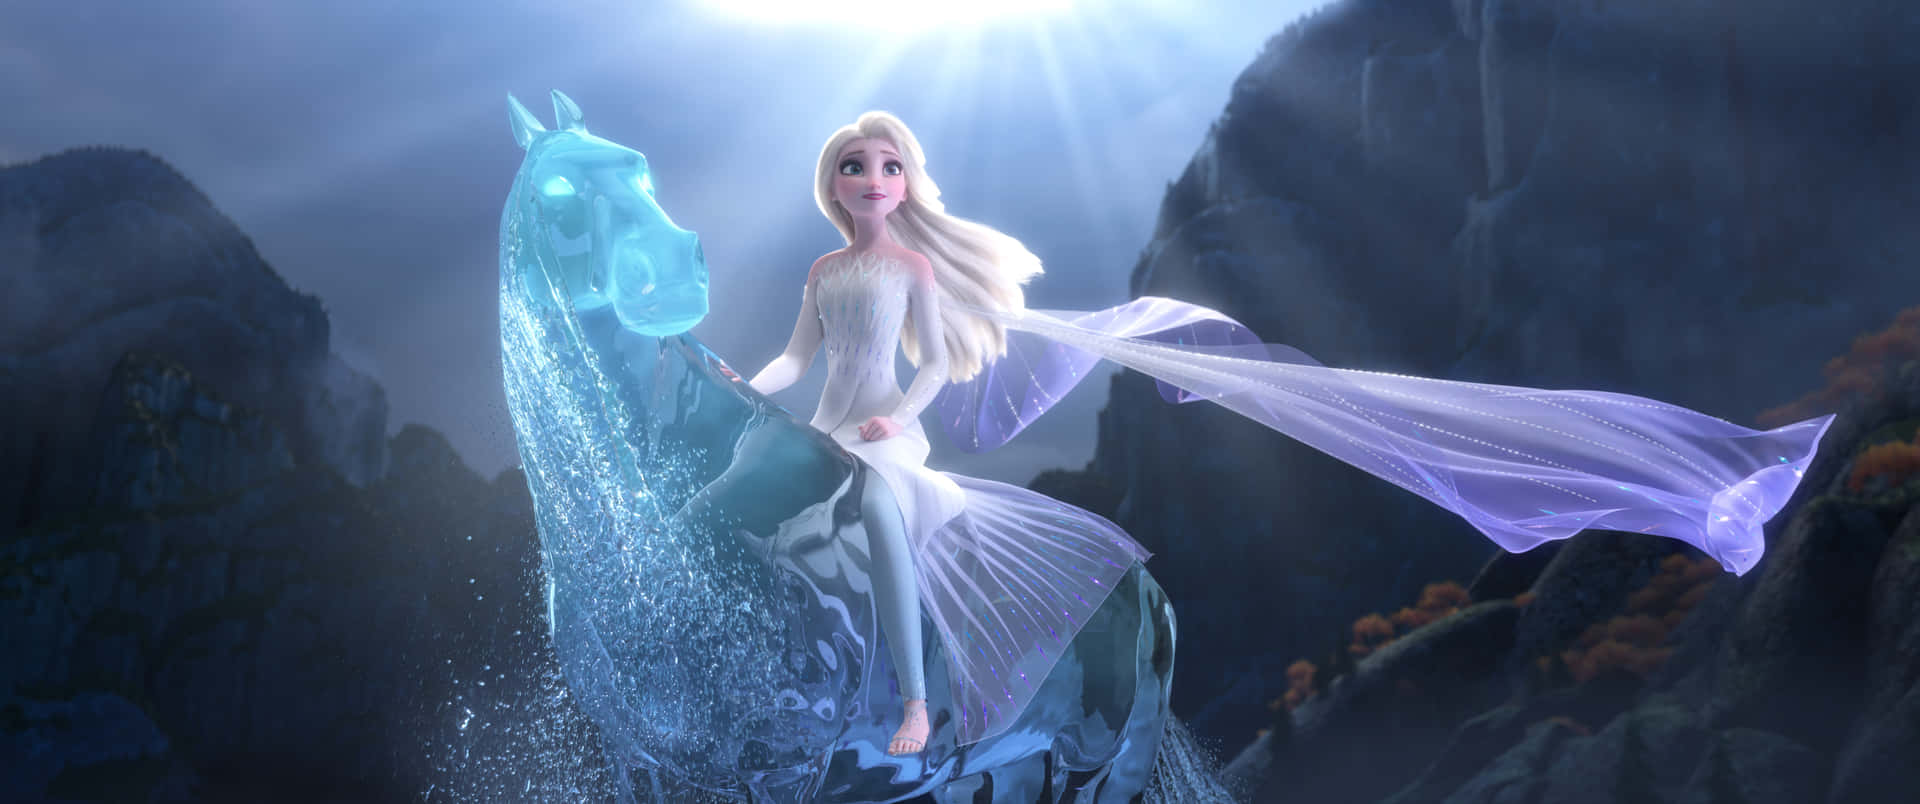 Imágenesde Elsa Frozen Montando A Caballo.